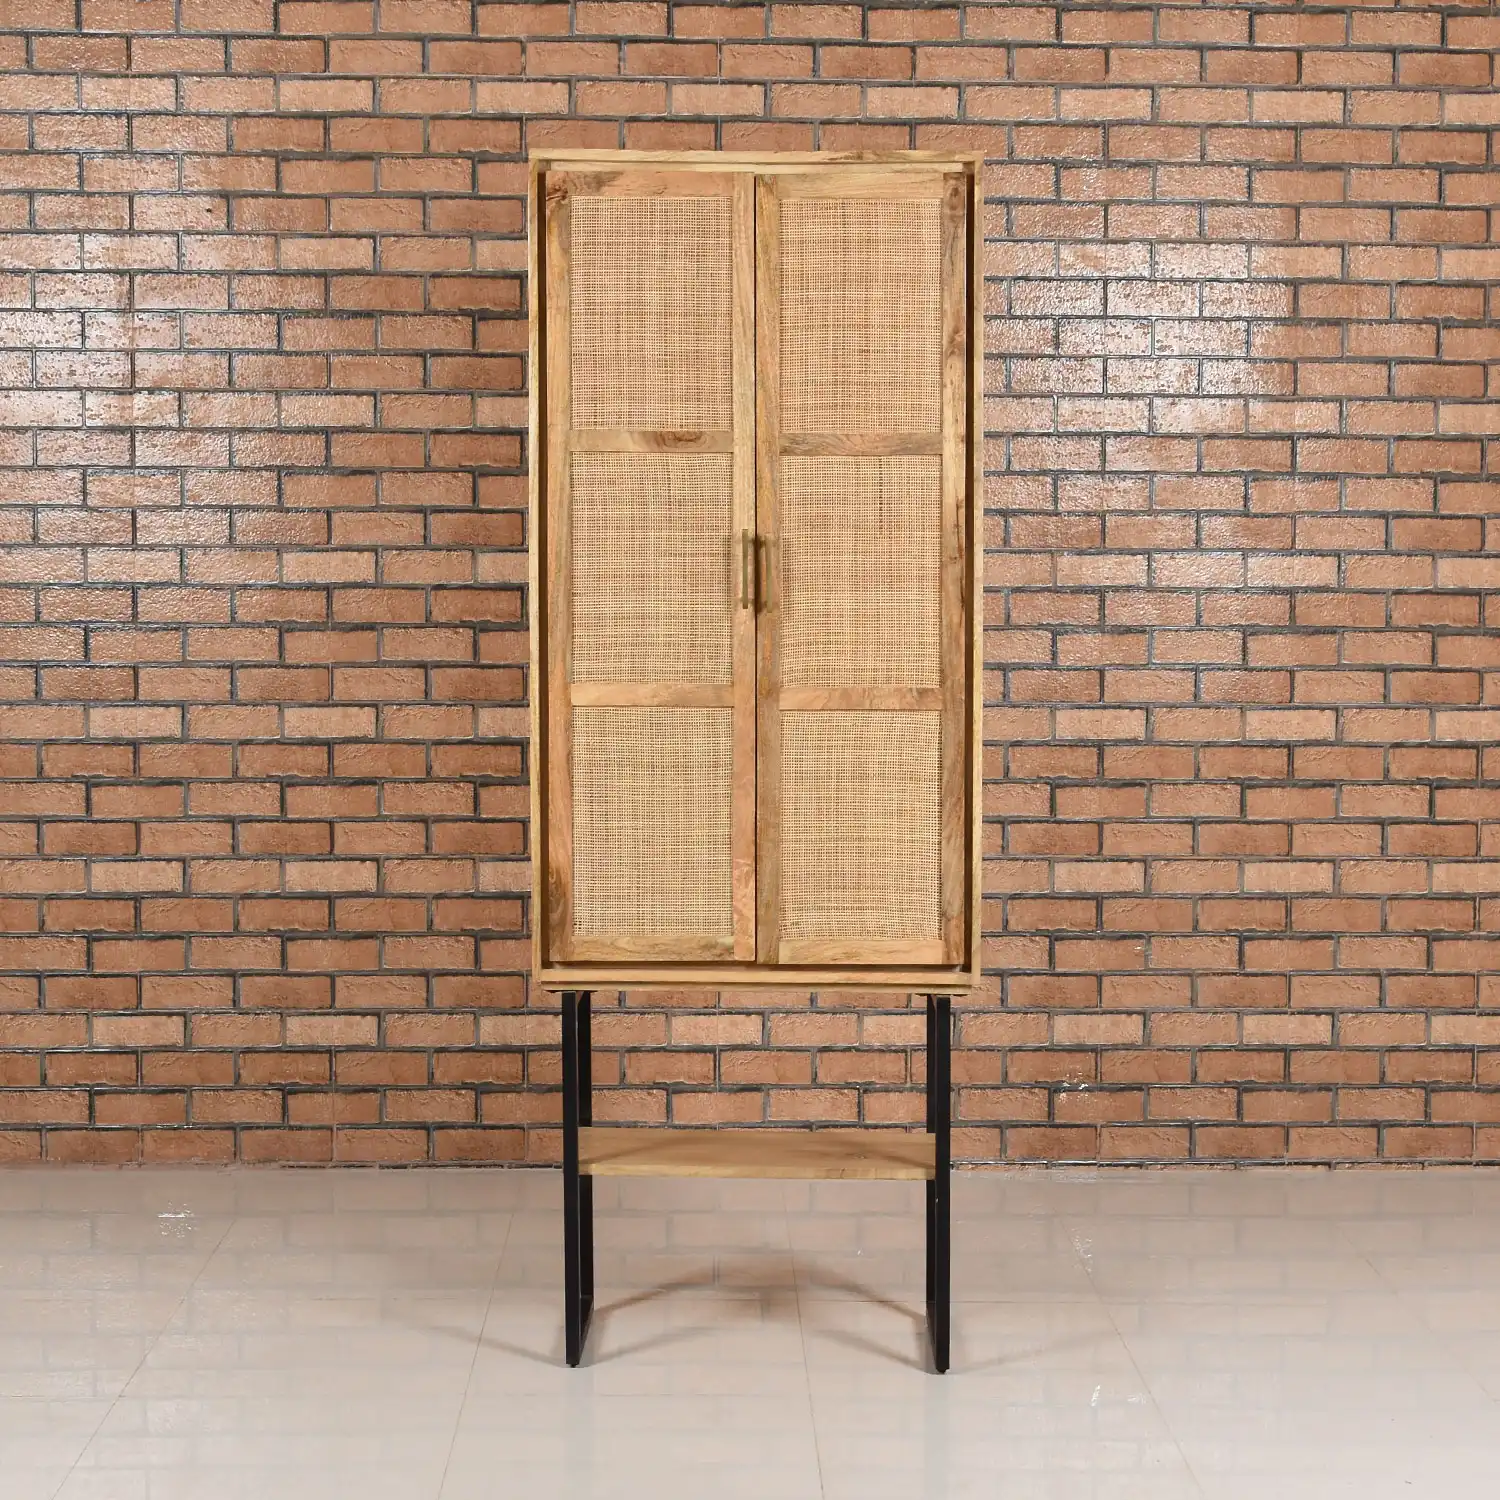 Wooden & Rattan Almirah with 2 Doors & 1 Open Shelf  KD - popular handicrafts